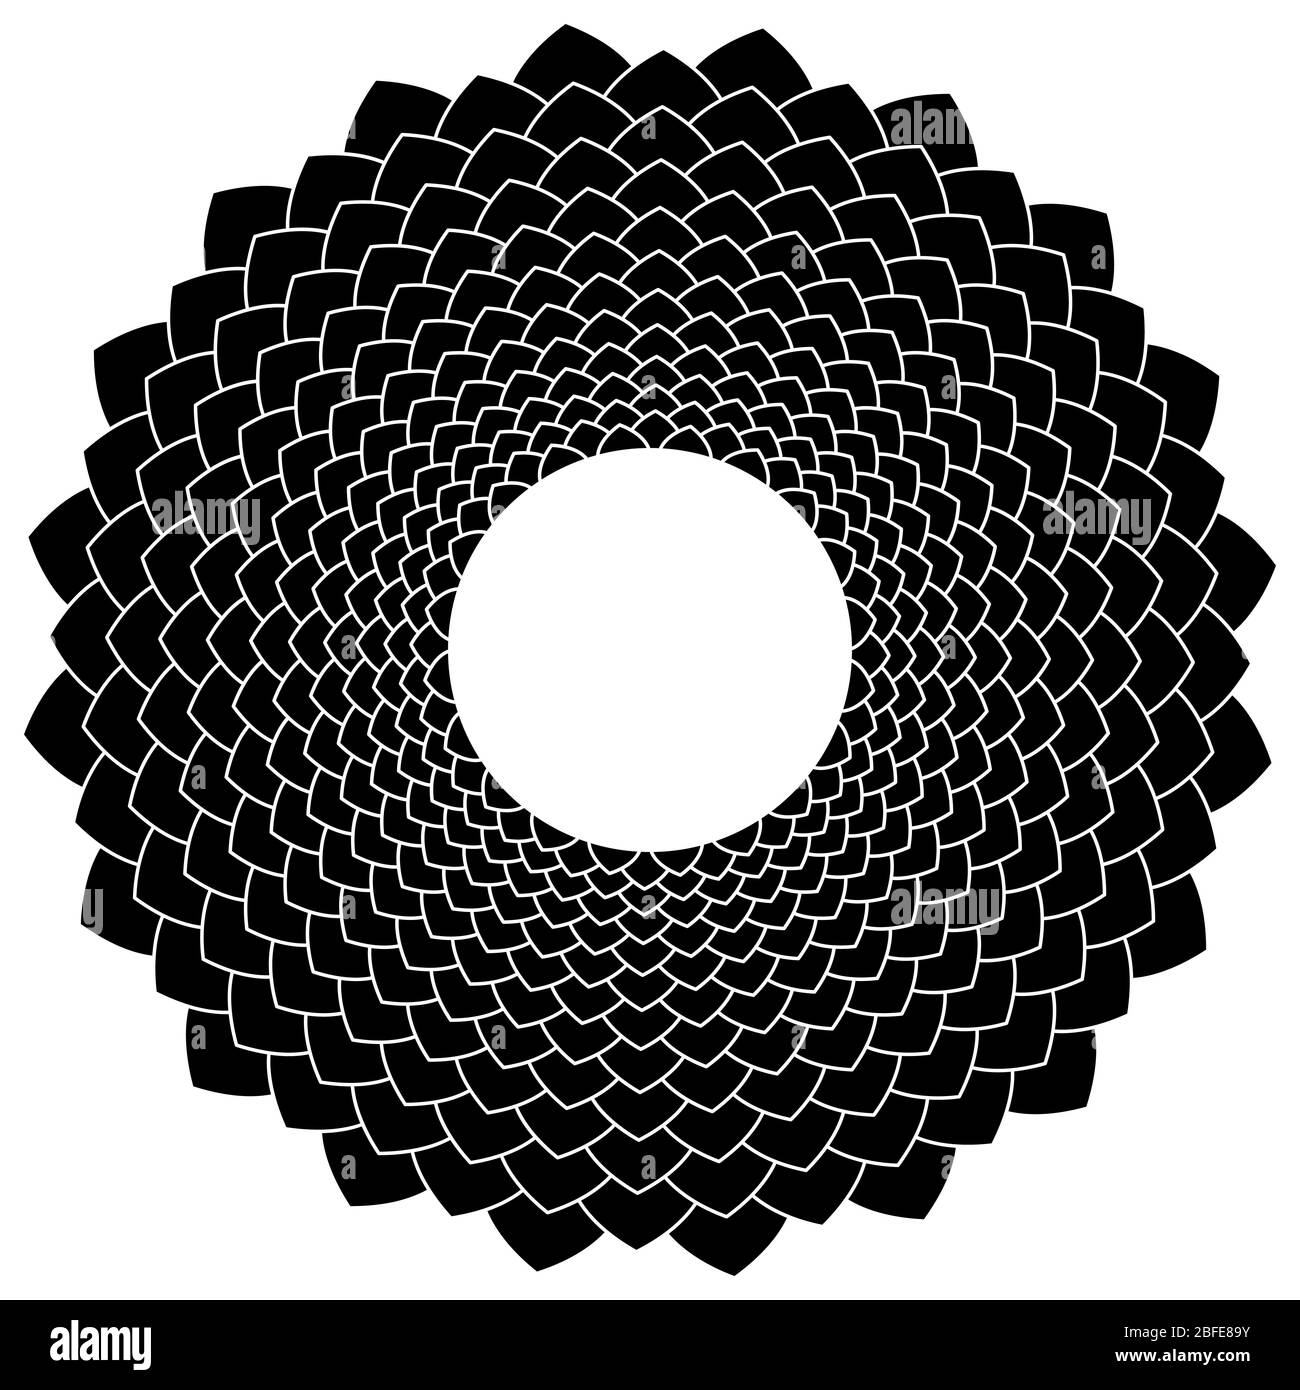 Símbolo abstracto de flor en blanco y negro. Formas de pétalos formando un signo de flor con un círculo blanco en el centro. Ilustración aislada. Foto de stock